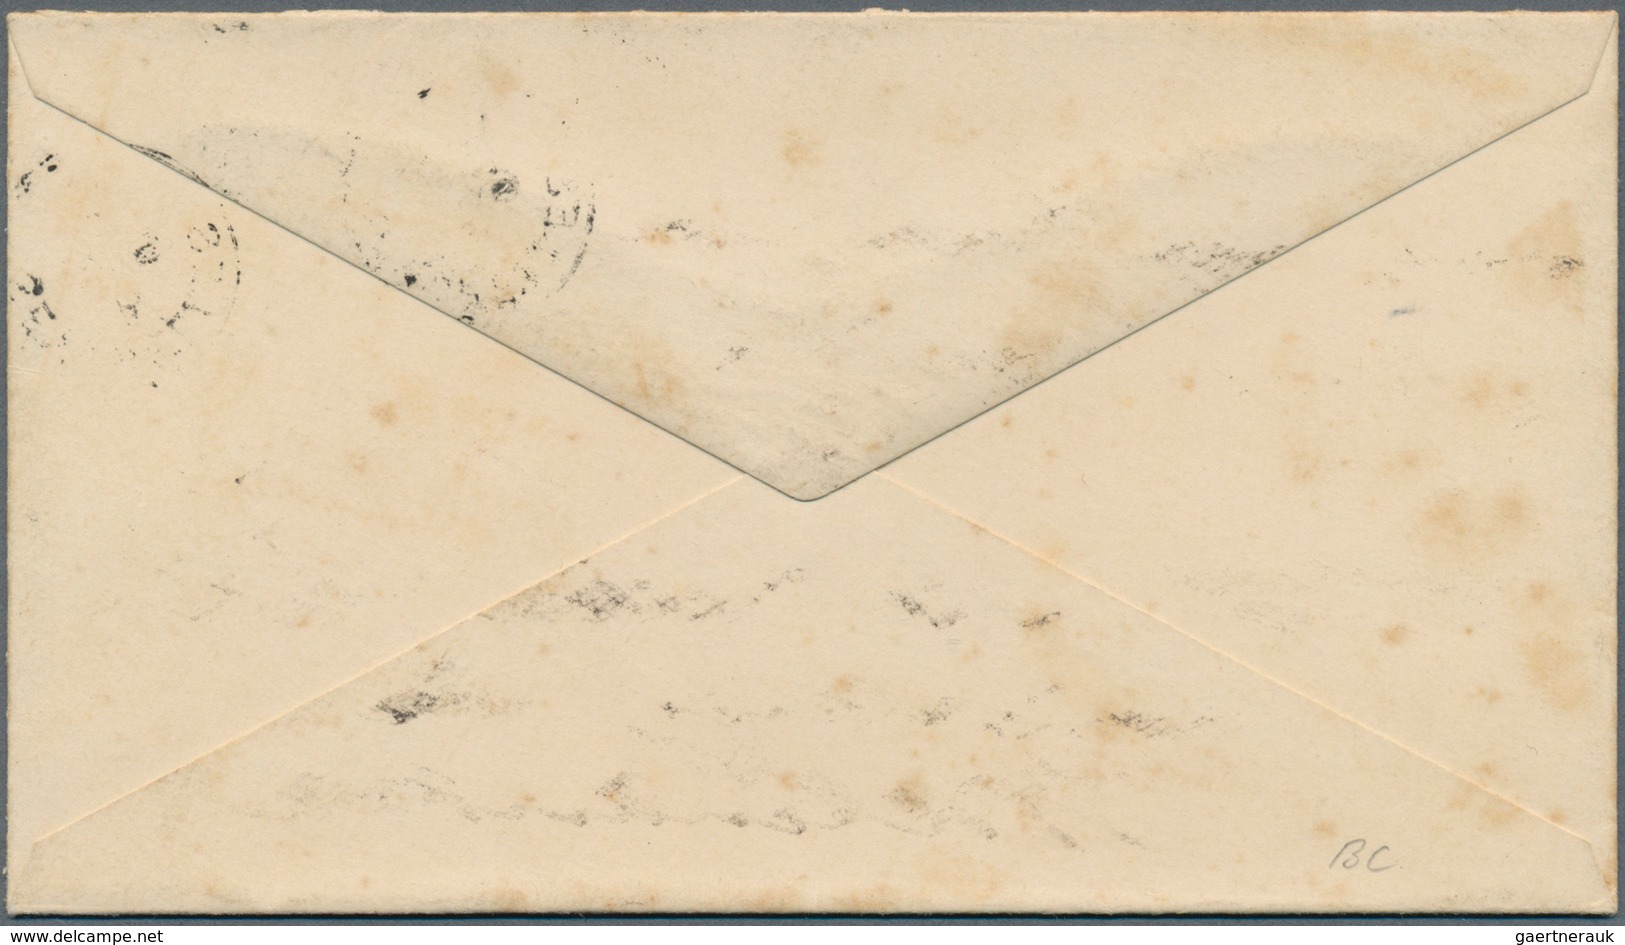 Seychellen: 1901, Stationery Envelope 15 C. Blue Sent From "SEYCHELLES A JY 9 01" To Kiel, Germany, - Seychelles (...-1976)